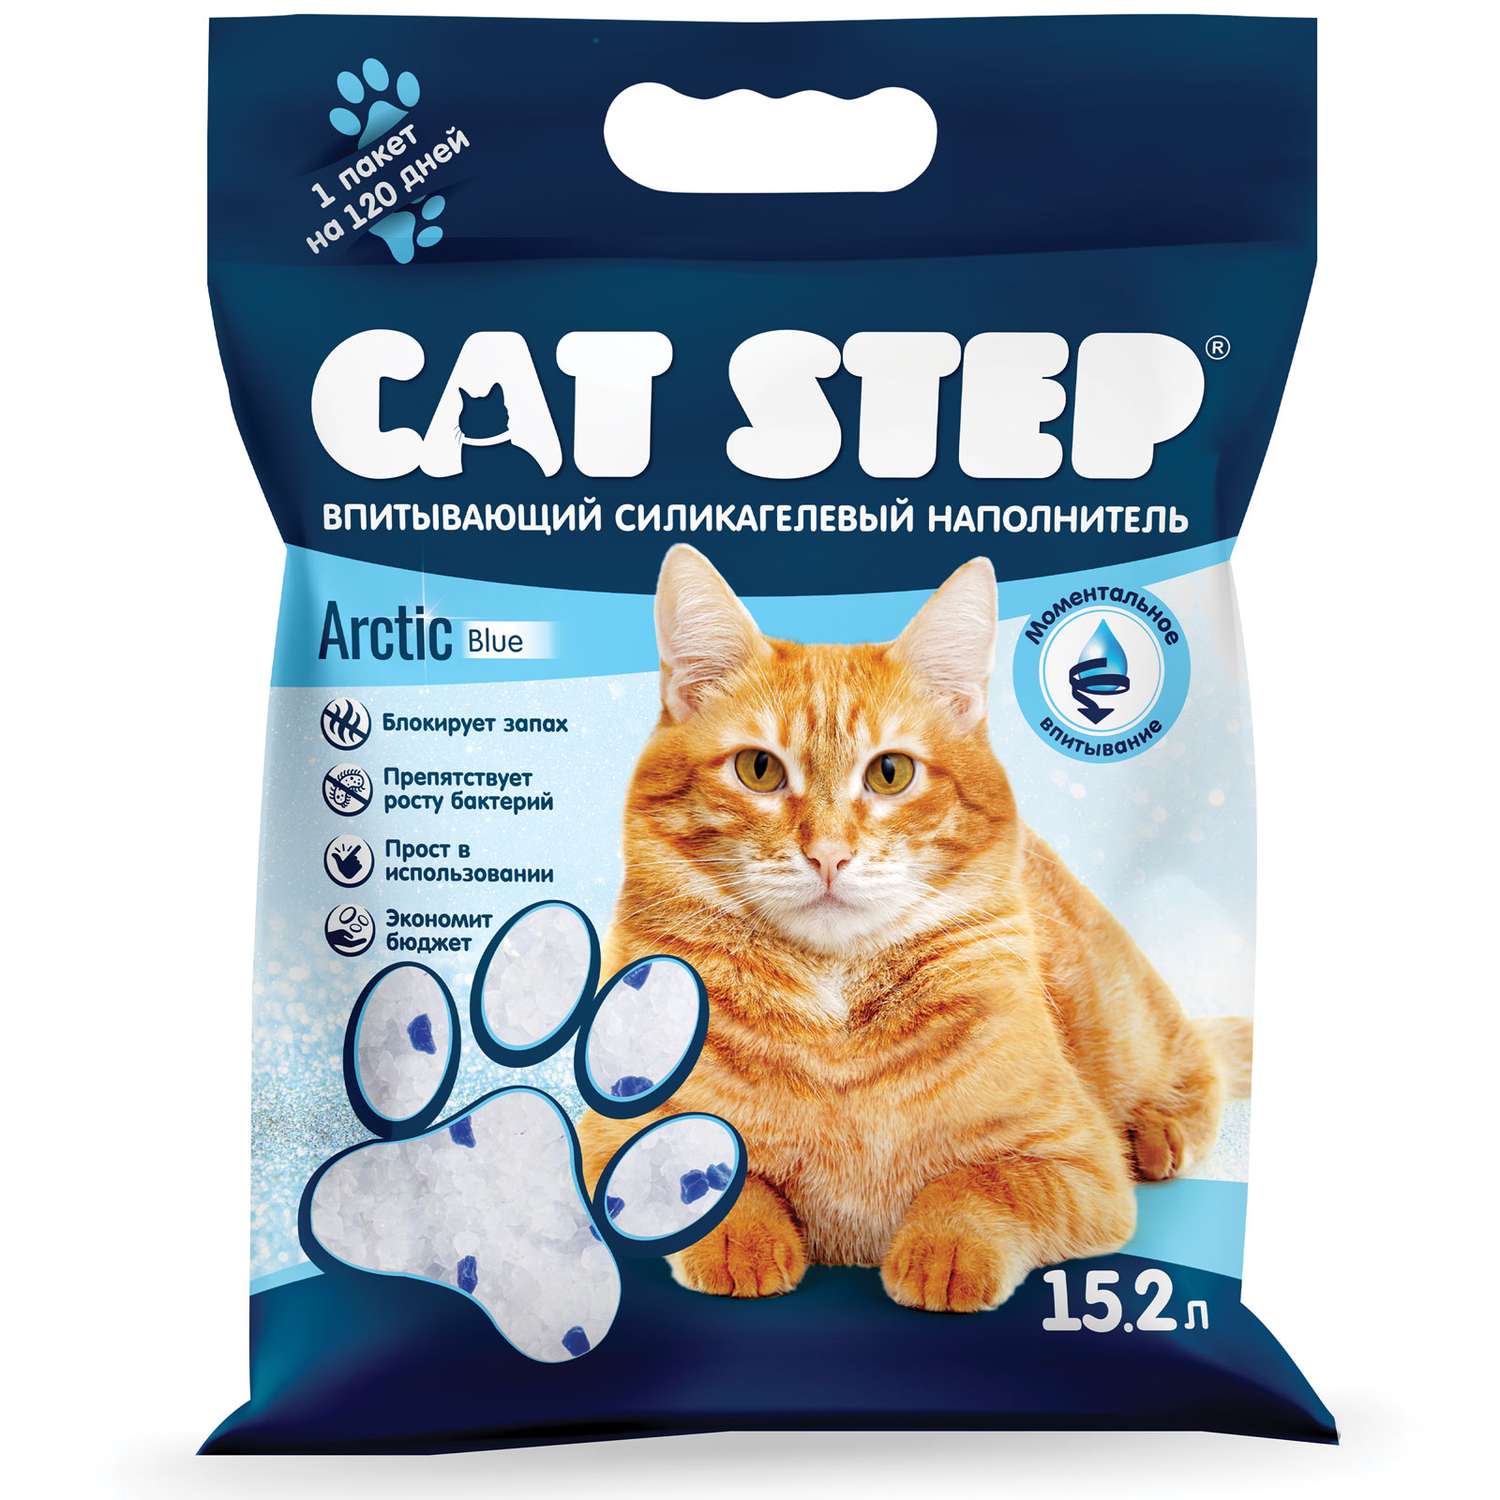 Наполнитель для кошек Cat Step Arctic Blue впитывающий силикагелевый 15.2л - фото 2